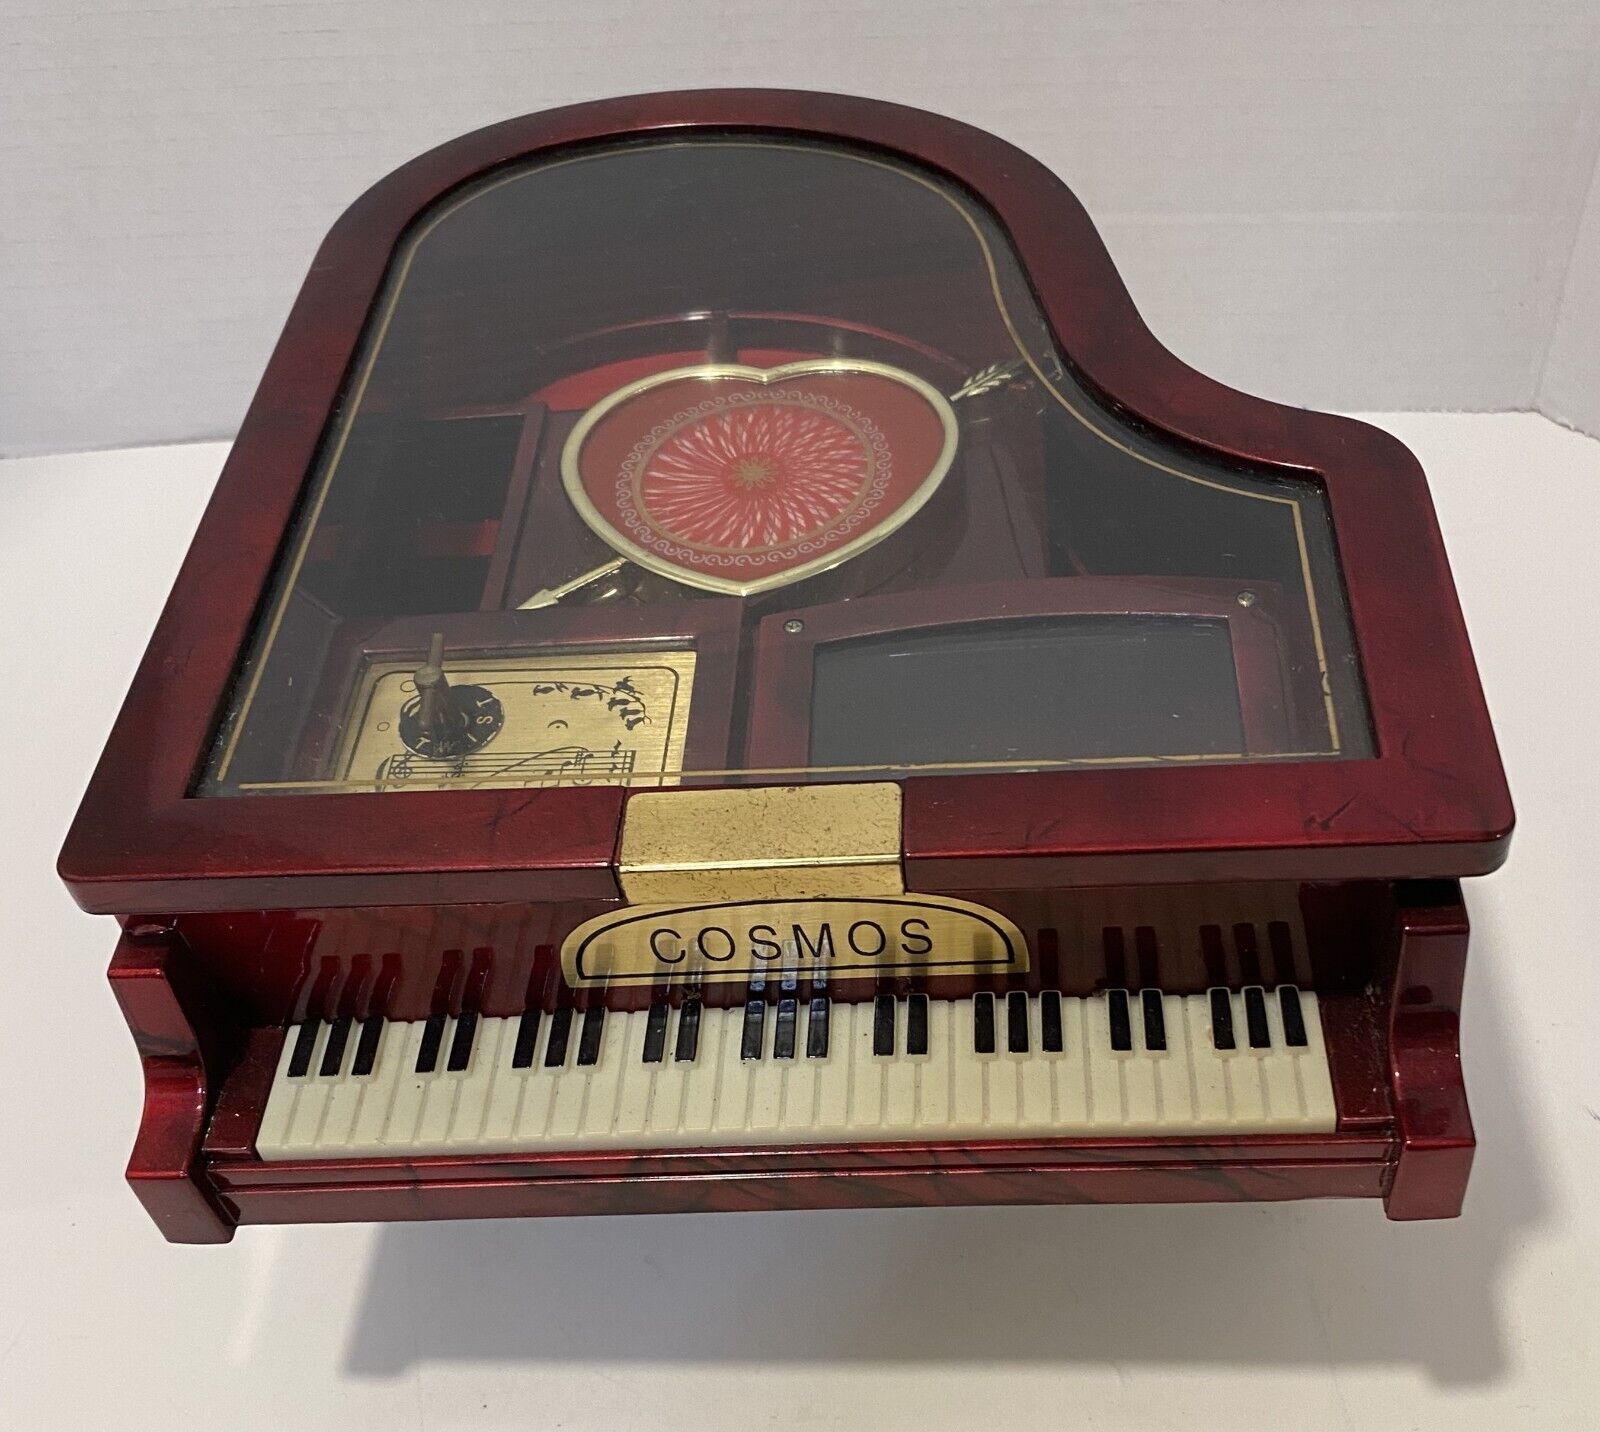 Cosmos Piano Music Box Jewelry Box Grand Piano